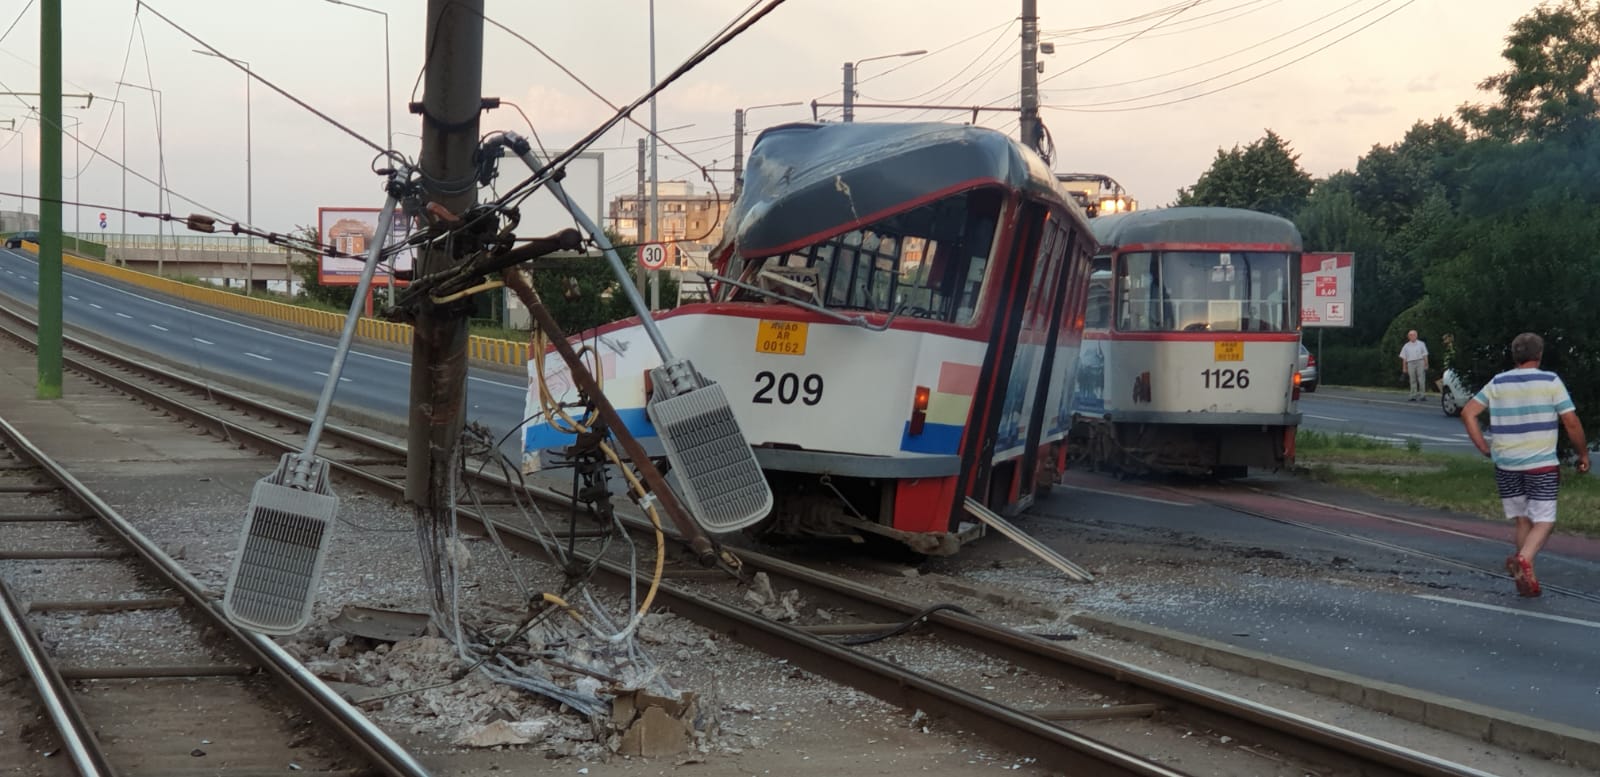 Video. Tramvai deraiat la Arad. O pasageră a fost rănită și dusă la spital - Imaginea 1